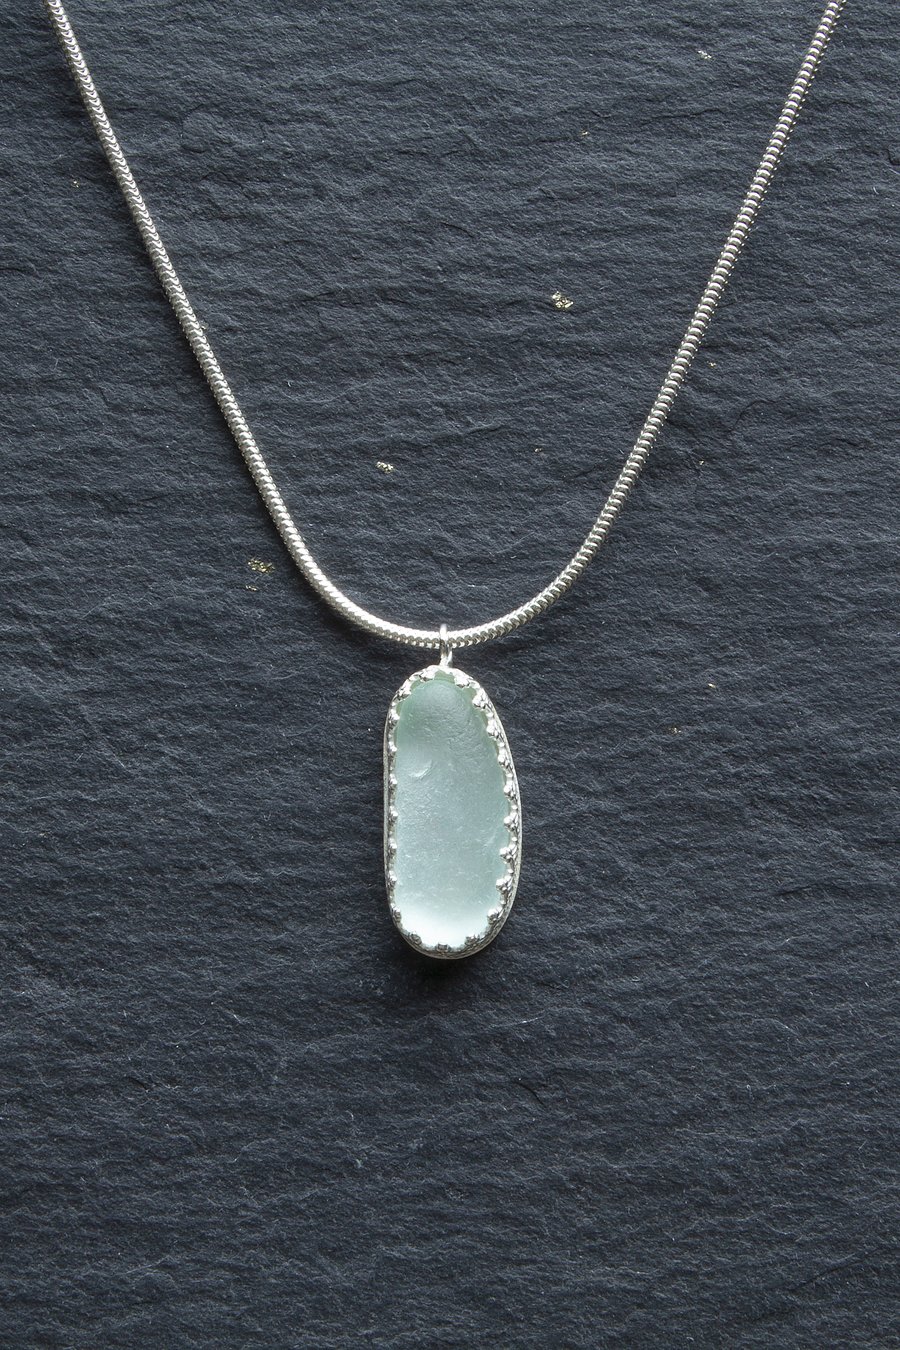 Sea glass pendant - aqua